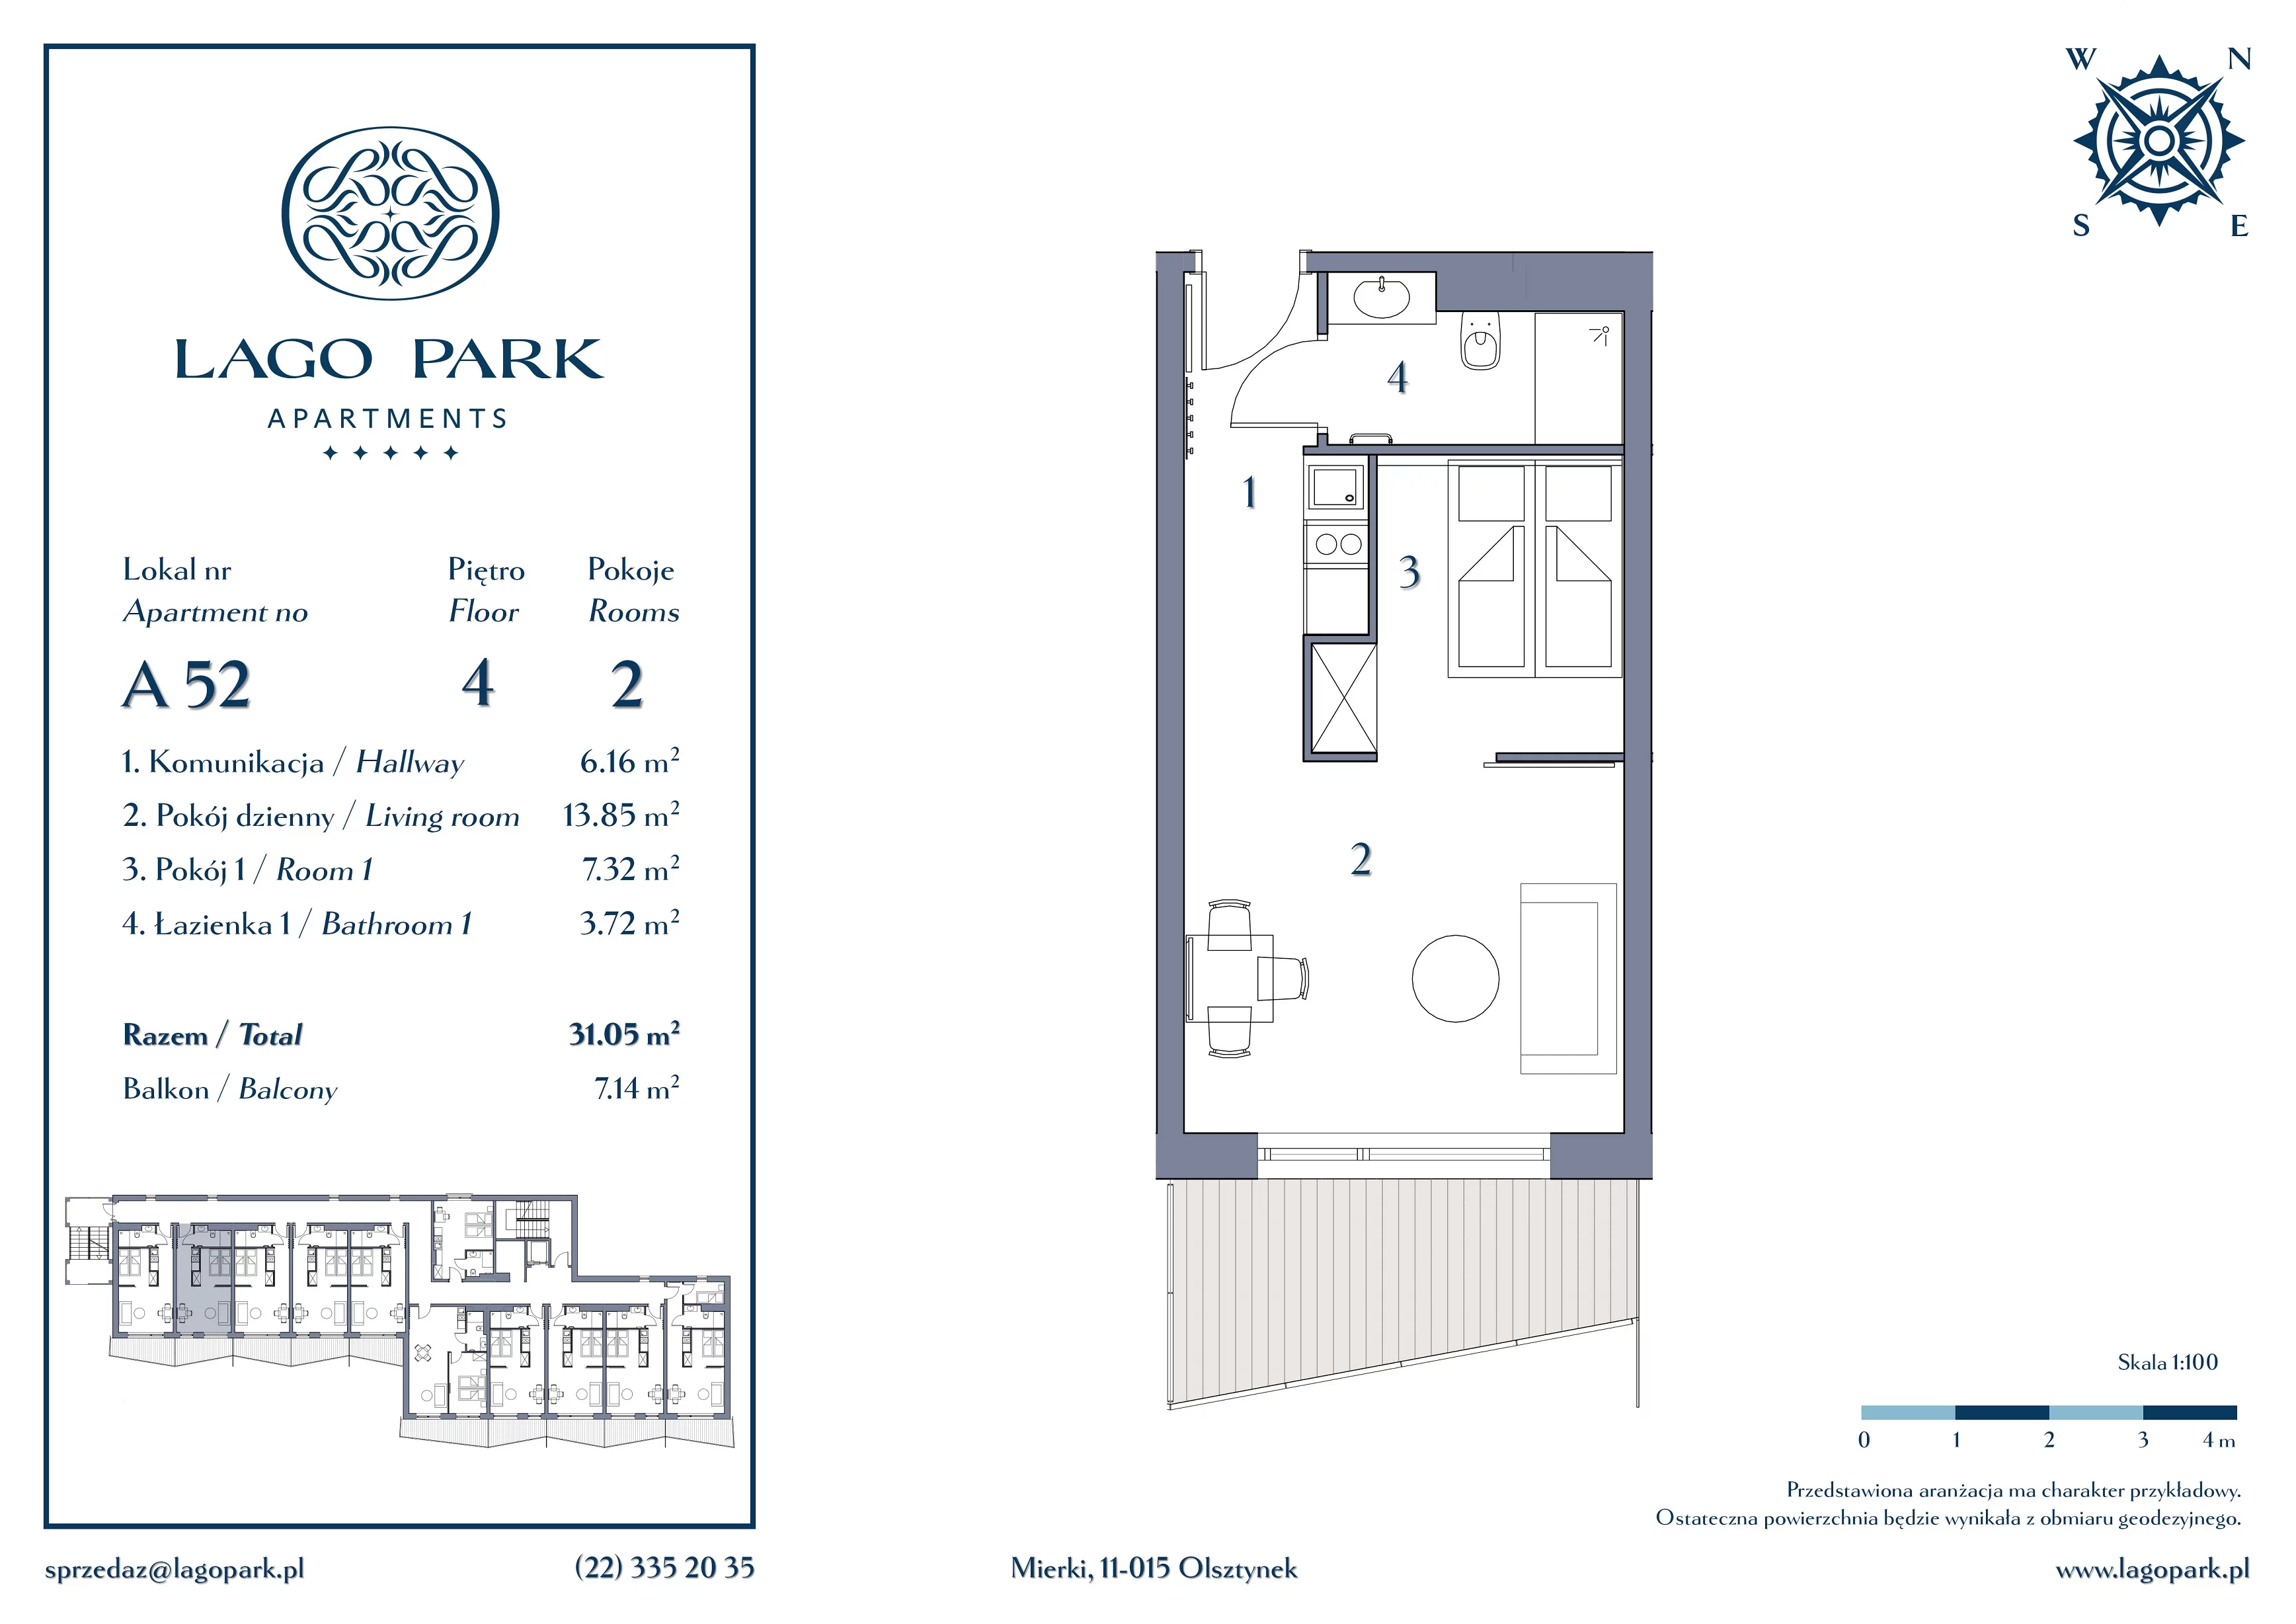 Apartament inwestycyjny 31,05 m², piętro 4, oferta nr A52, Lago Park Apartments by Aries, Mierki, Kołatek 2